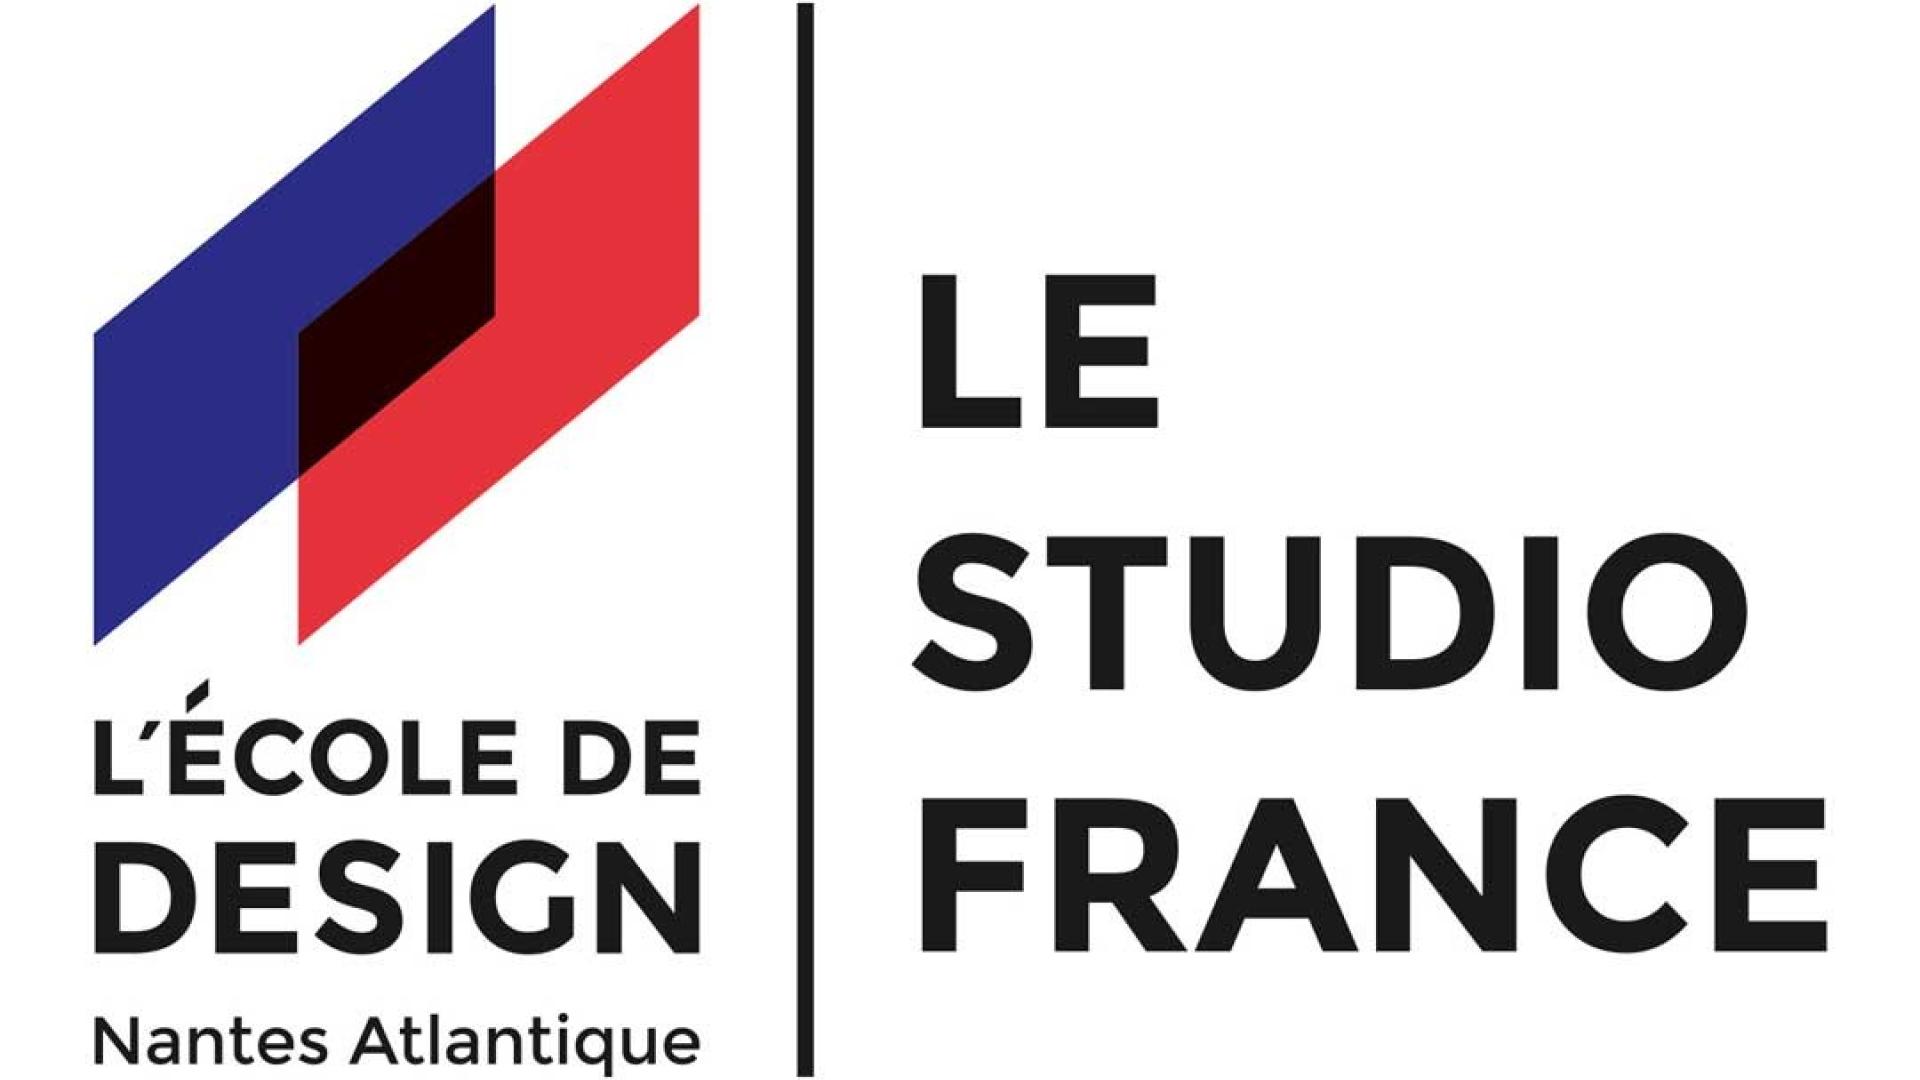 Affiche Le Sudio France de l'Ecole de Design de Nantes Atlantique